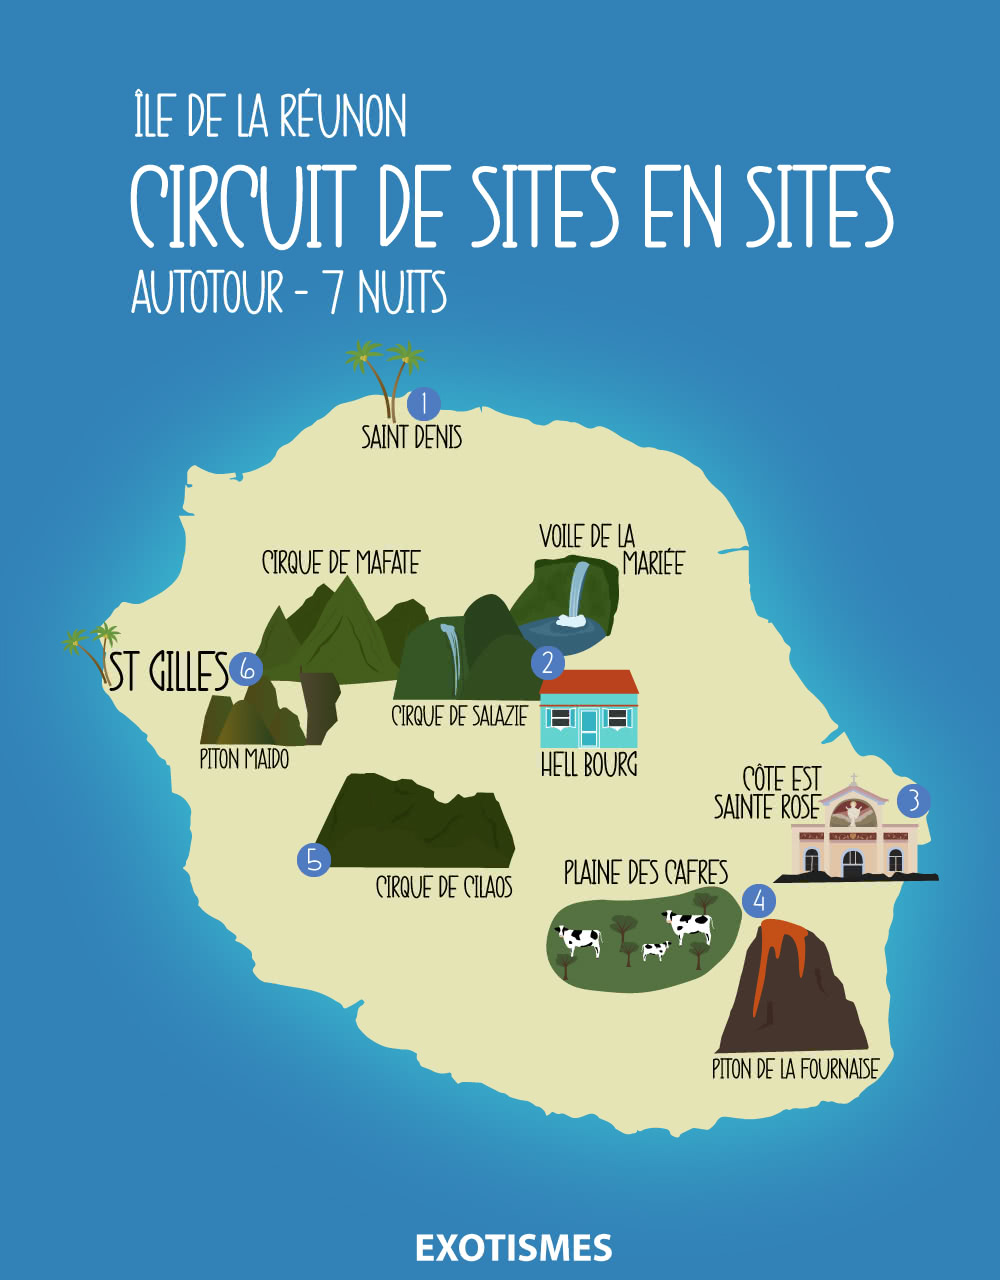 Réunion - Autotour Sites en Sites